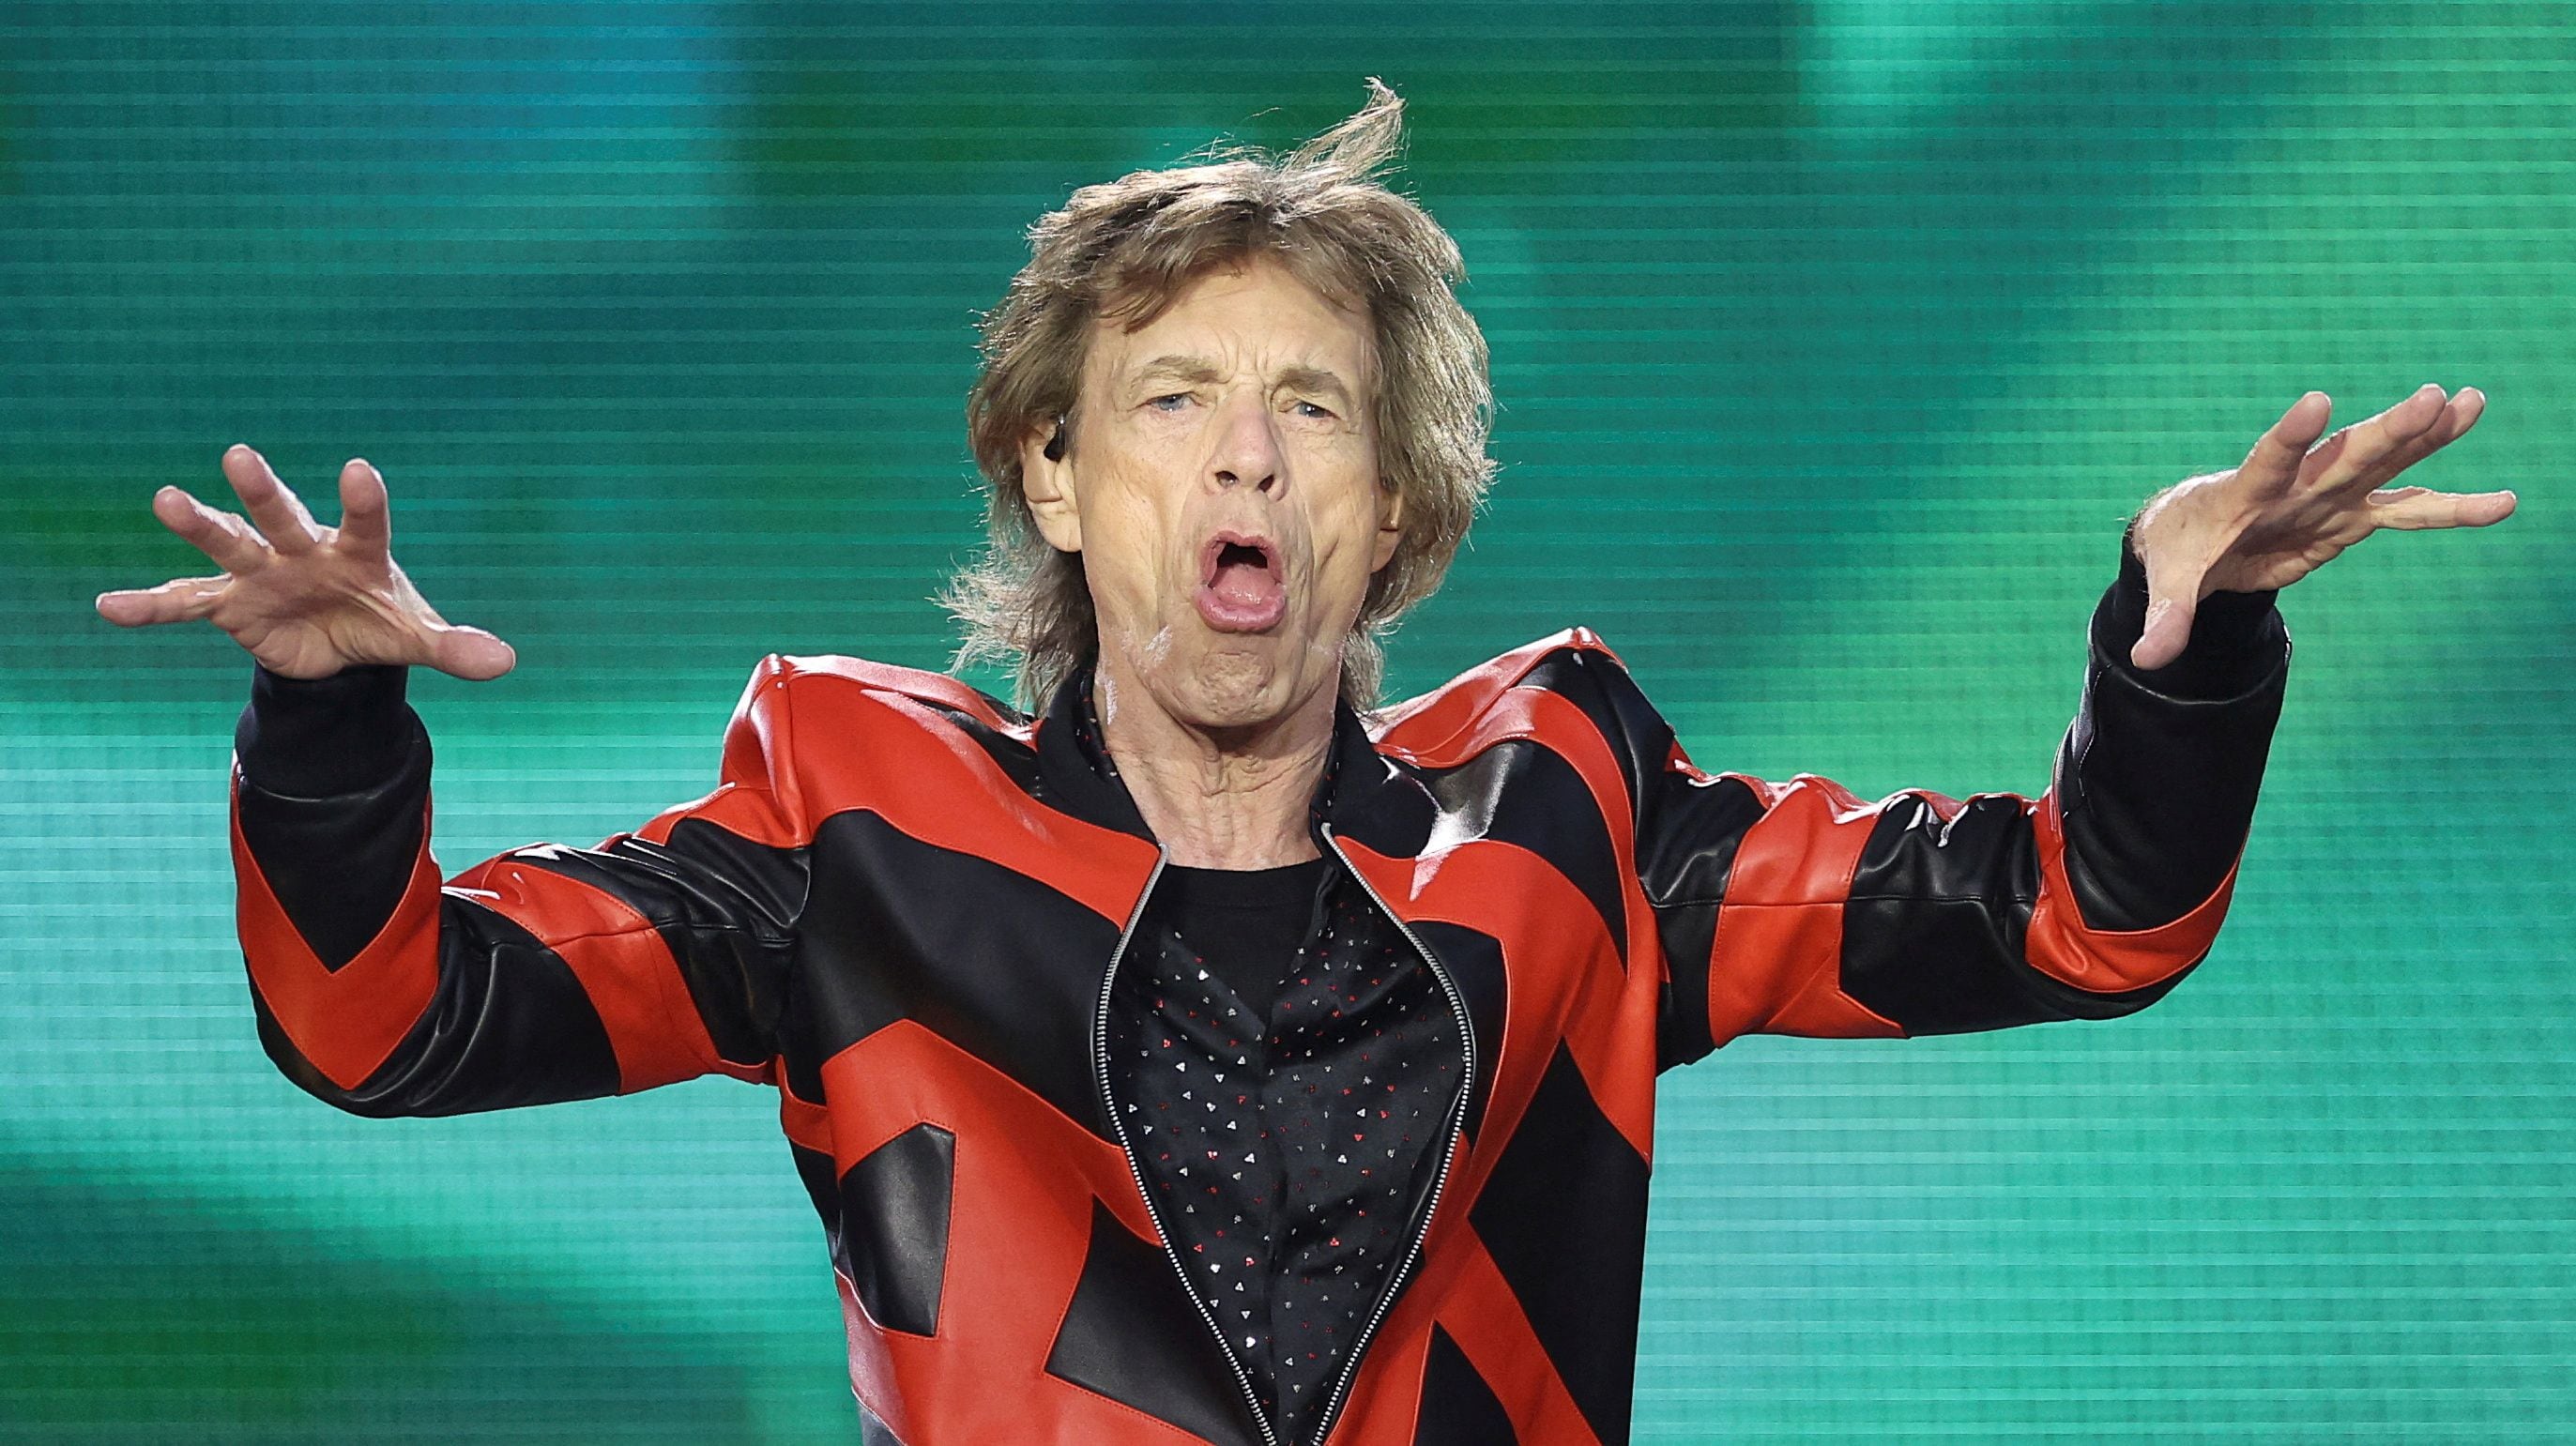 Mick Jagger realiza su performancen en el recital "Stones Sixty Europe 2022 Tour", en Liverpool, el 9 de junio de 2022. (REUTERS/Carl Recine/File Photo)